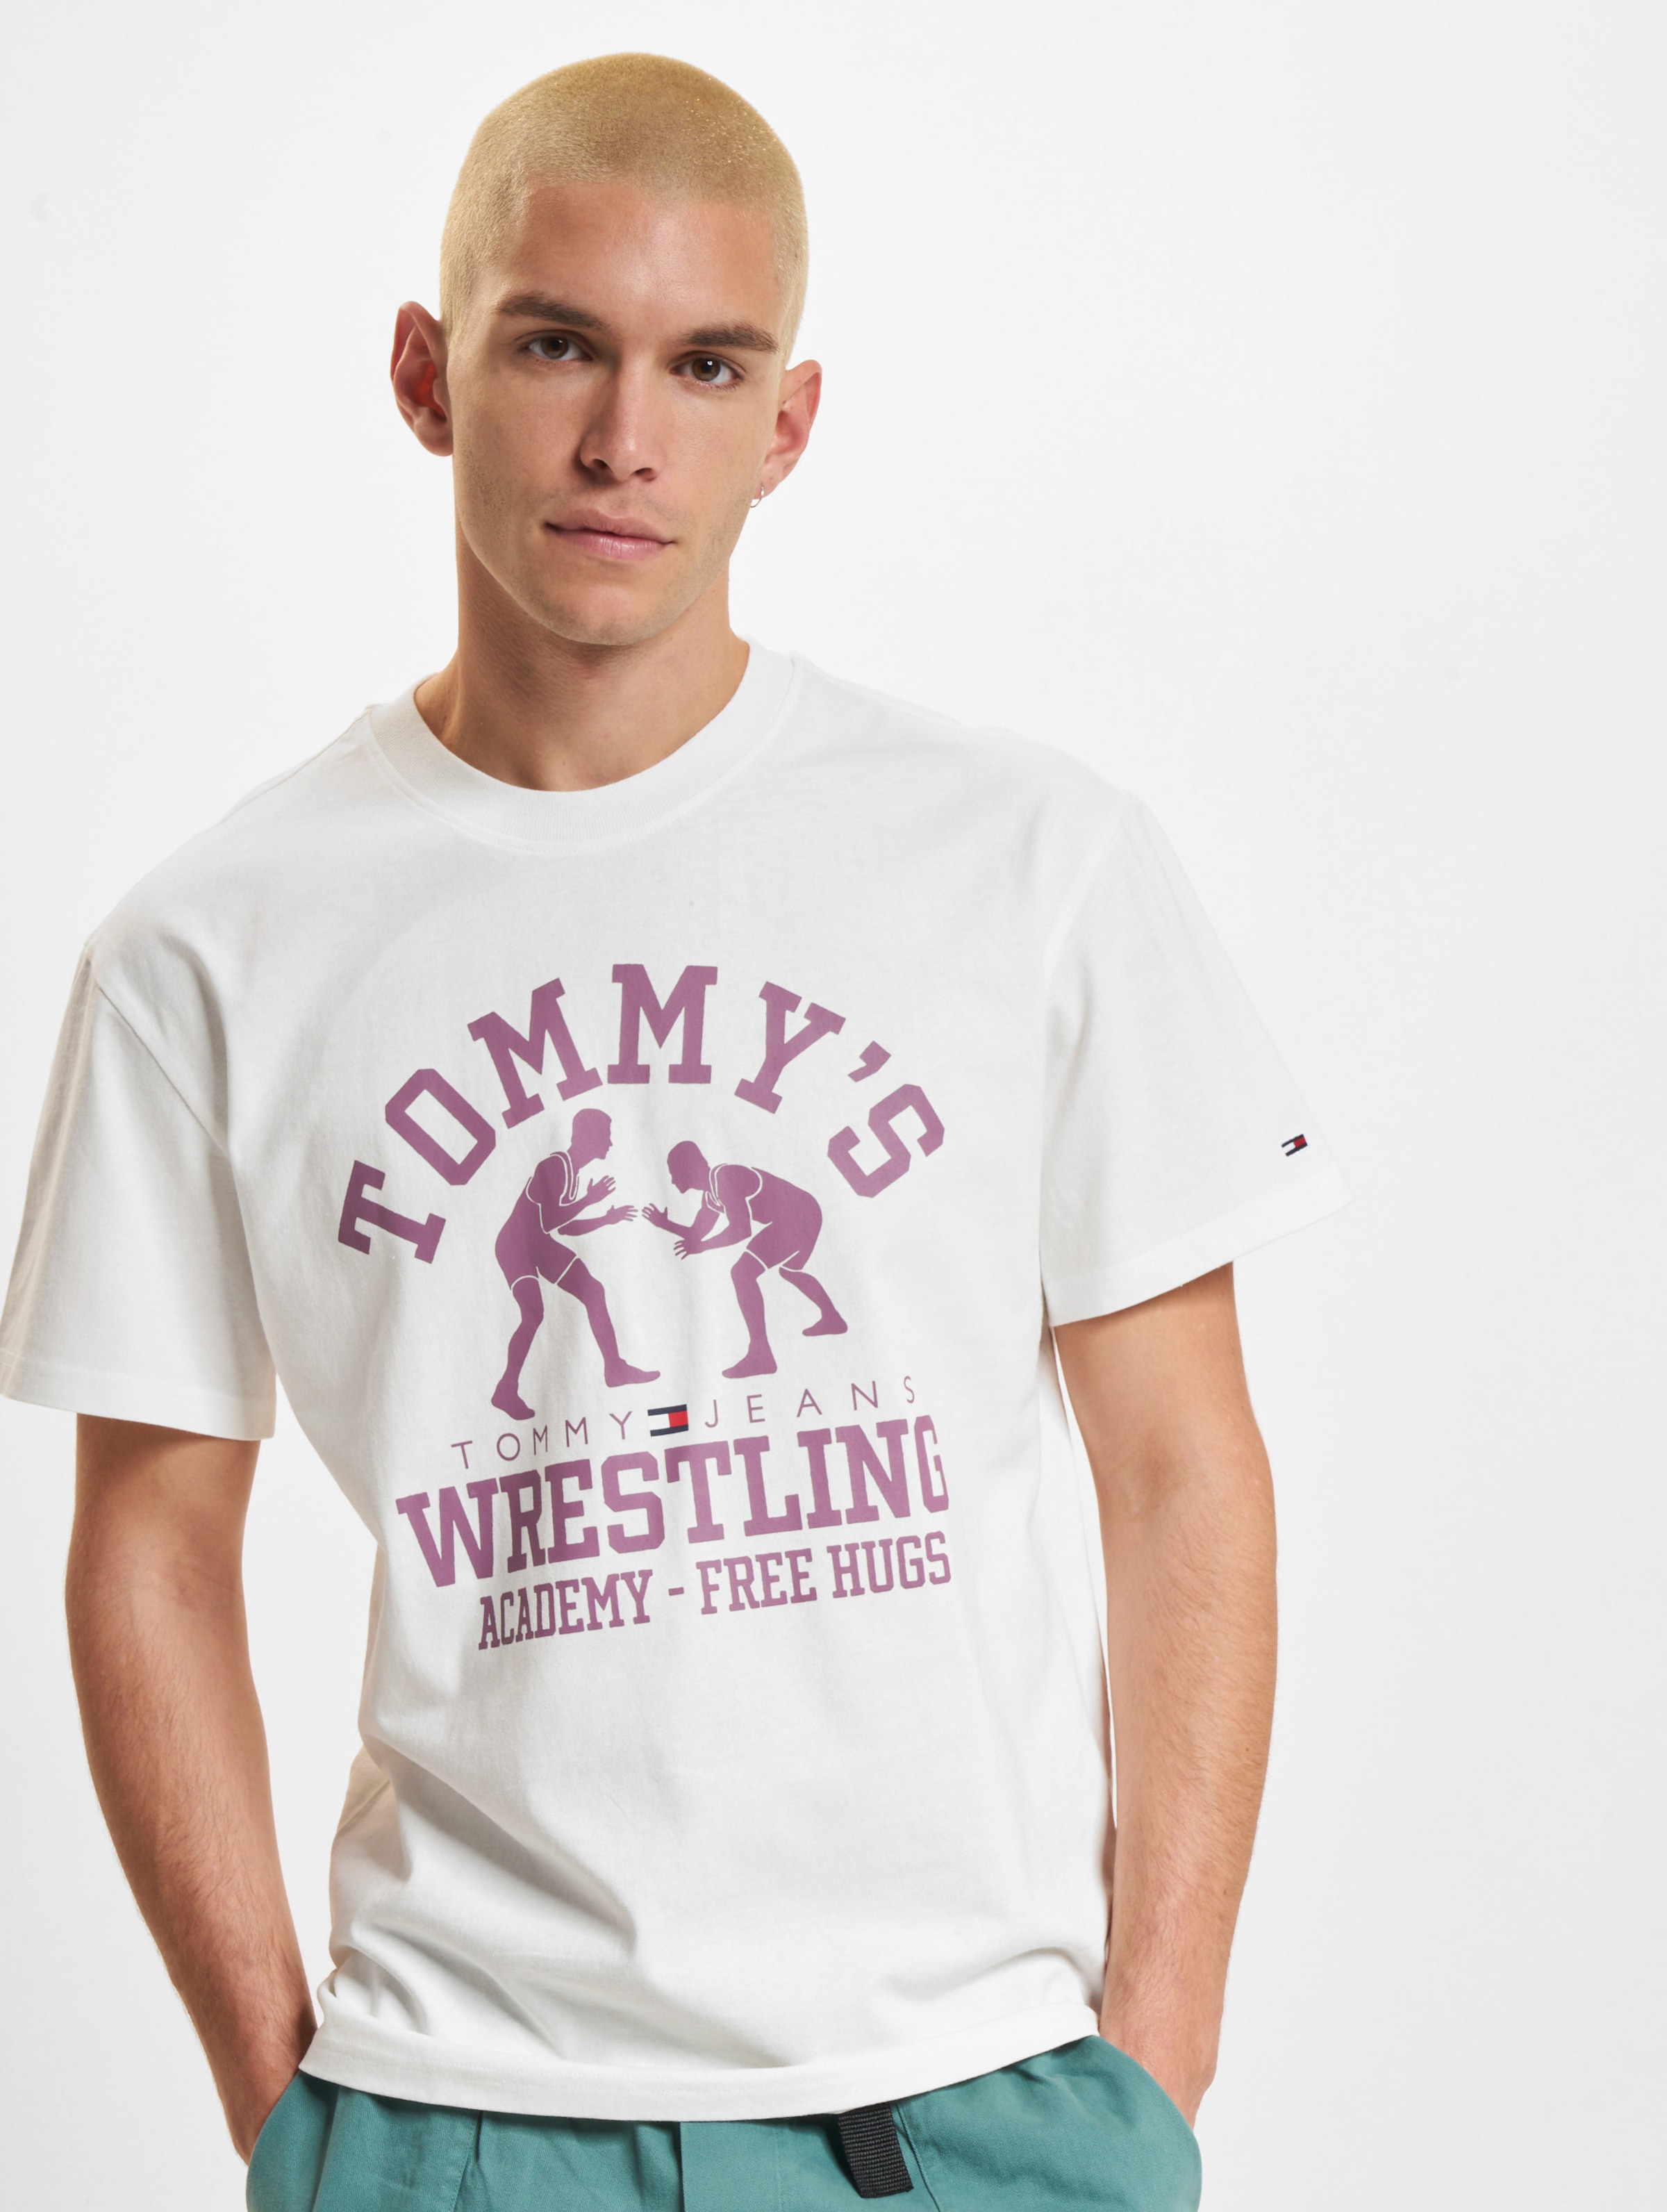 Tommy Jeans Rlxd Wrestling Vintage Männer,Unisex op kleur wit, Maat M